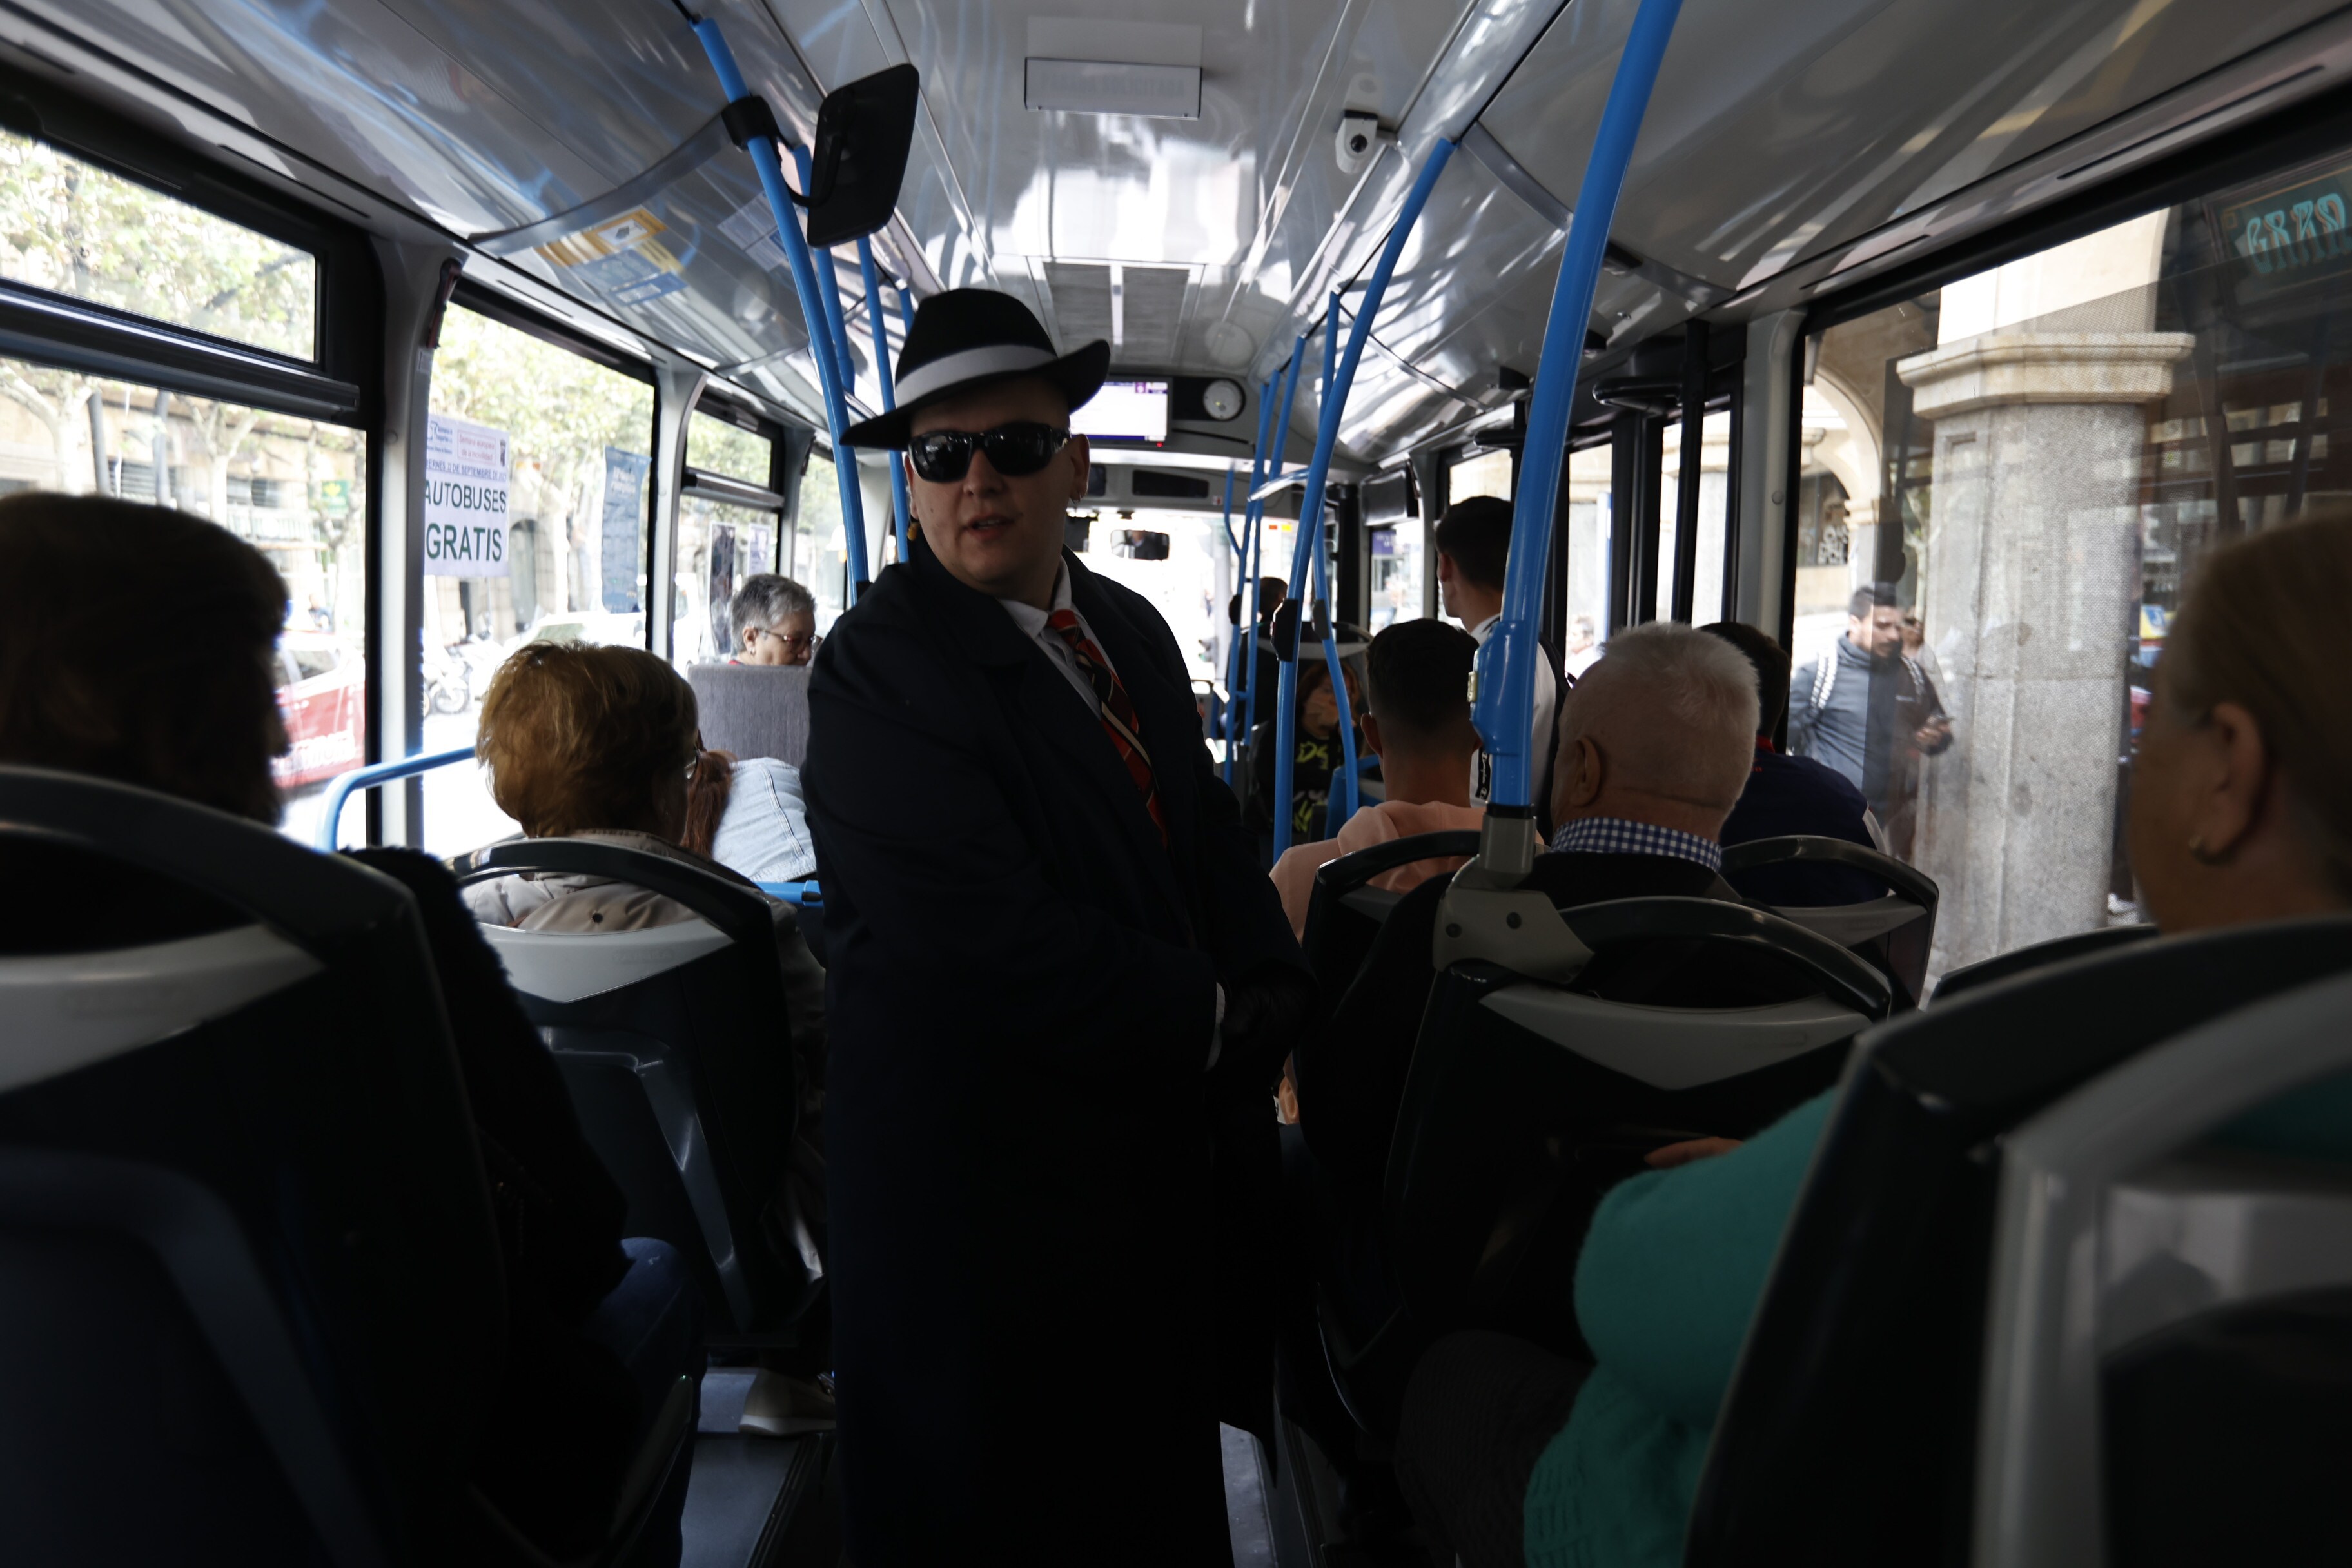 Así se ha vivido el Día sin Coche en los buses gratis de Salamanca